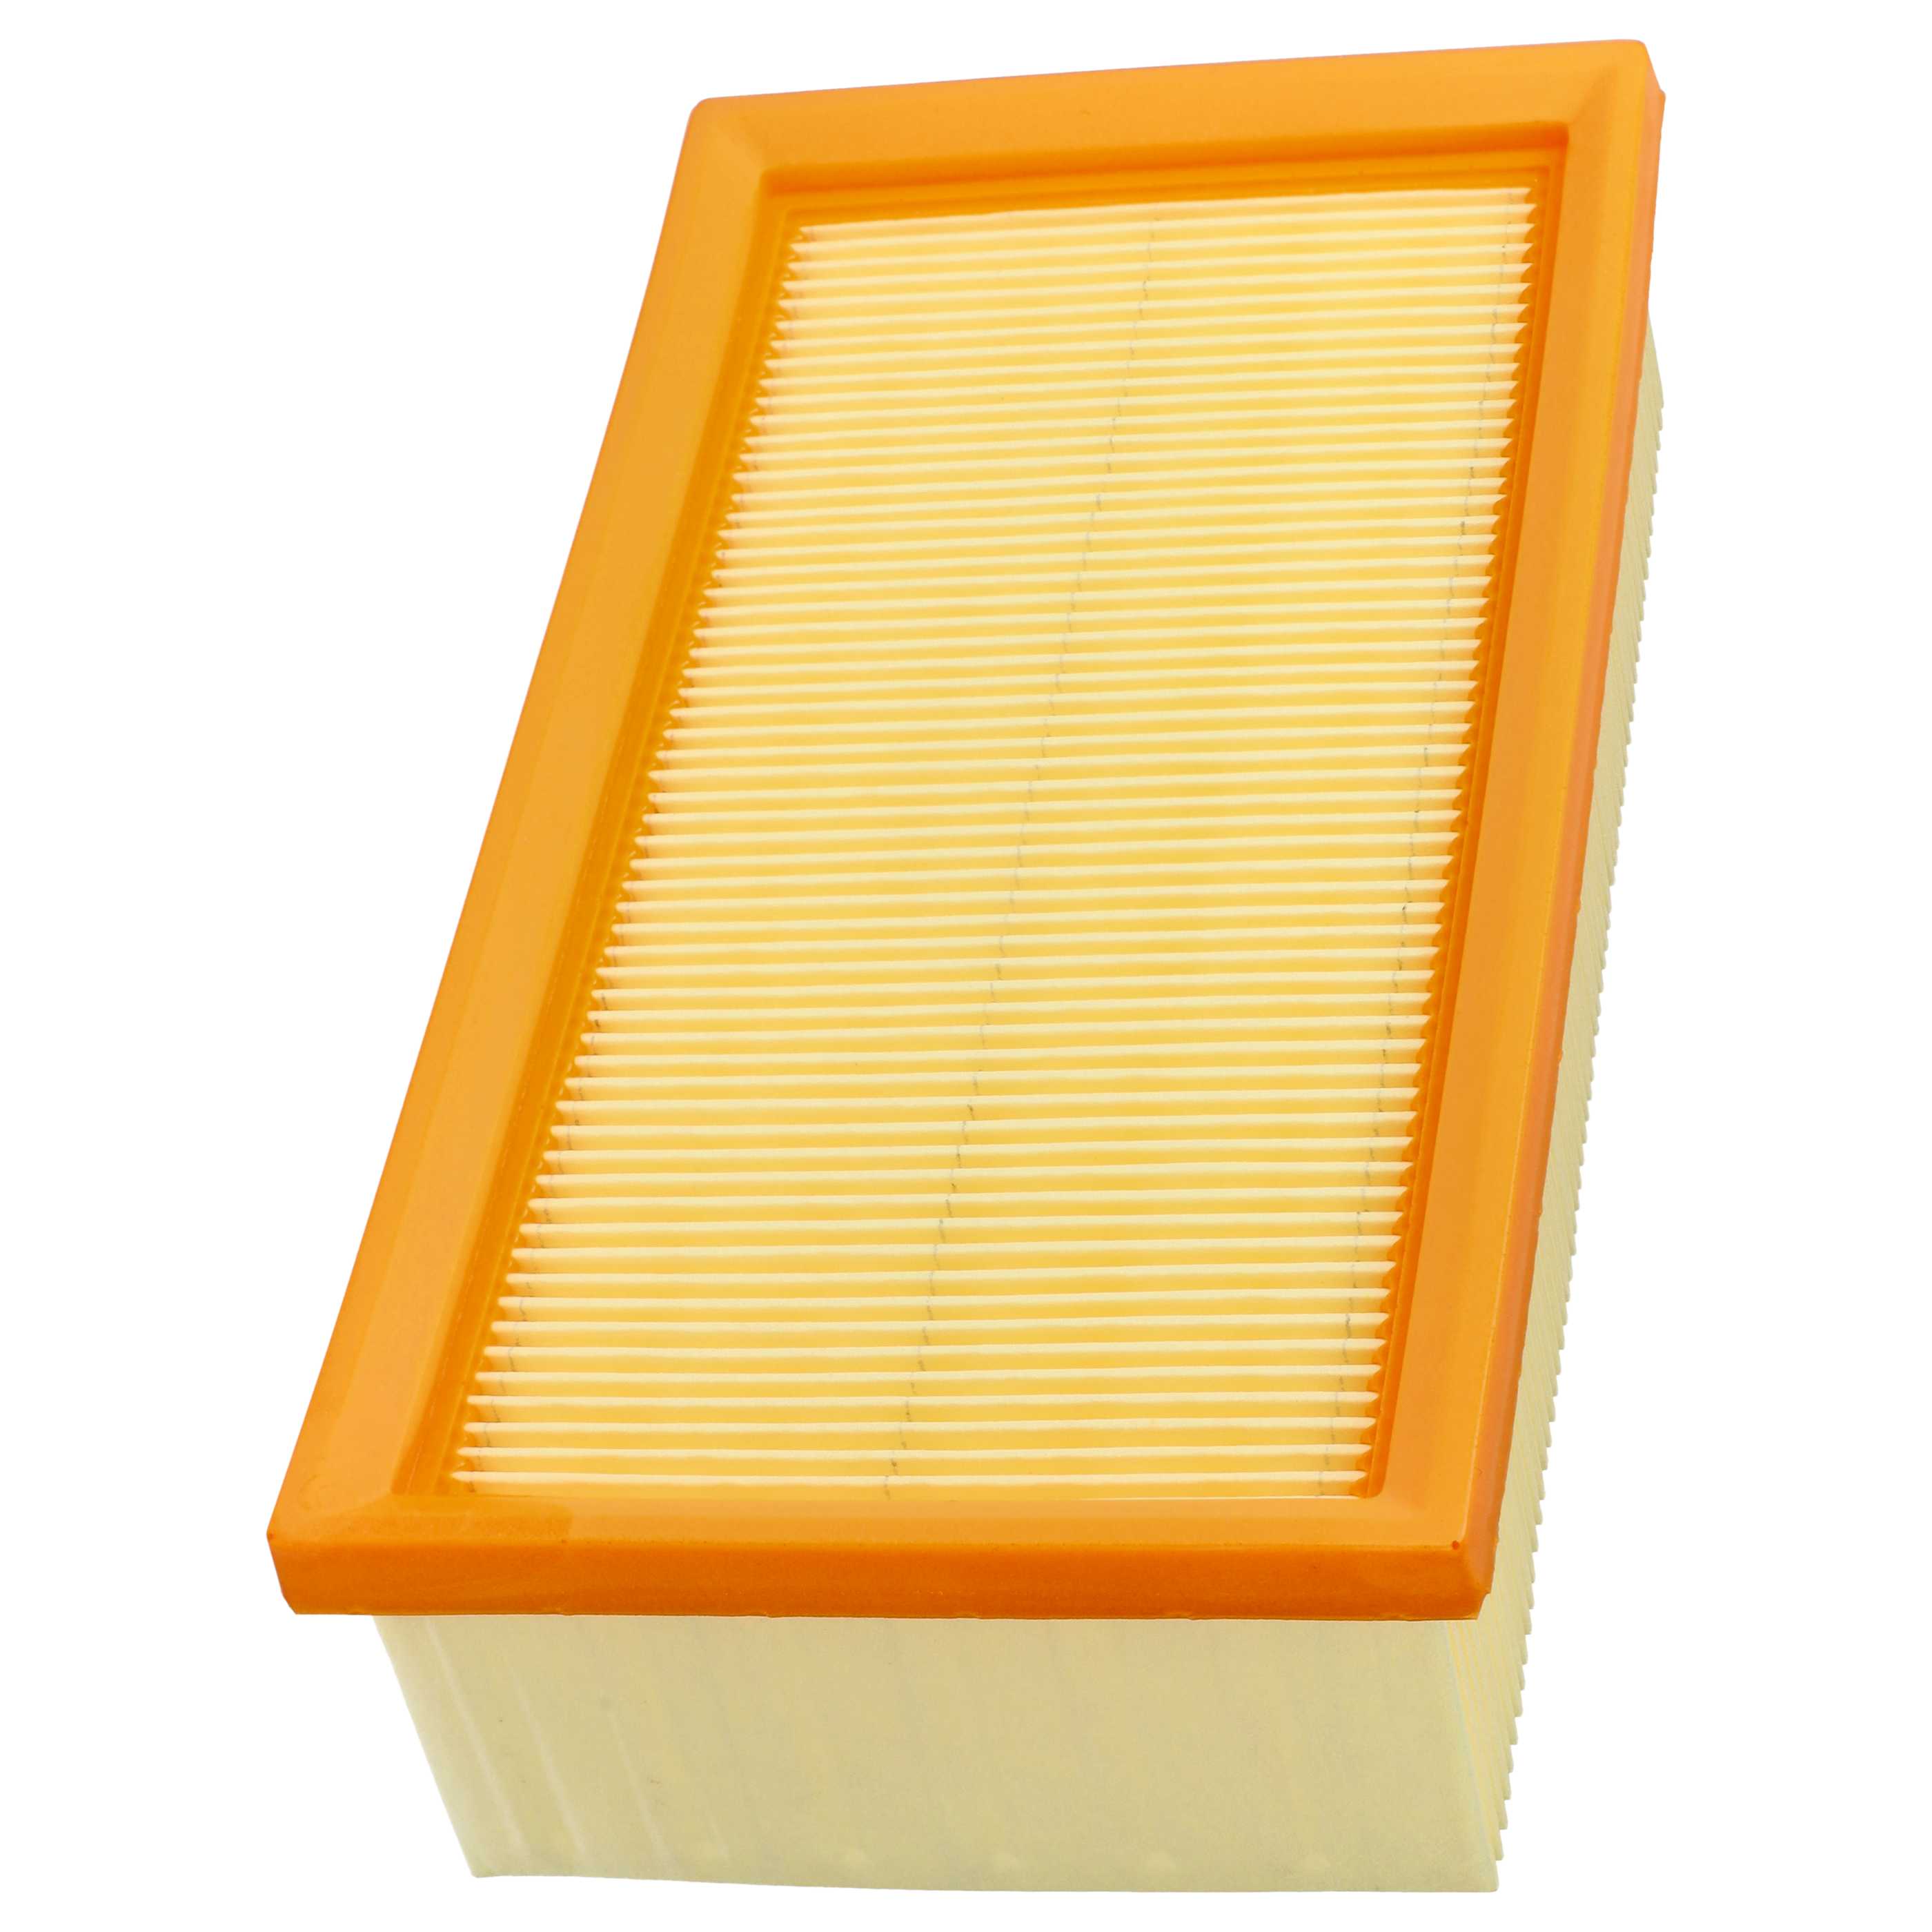 1x flat pleated filter replaces Festool 452923, 500558 for Kränzle Vacuum Cleaner